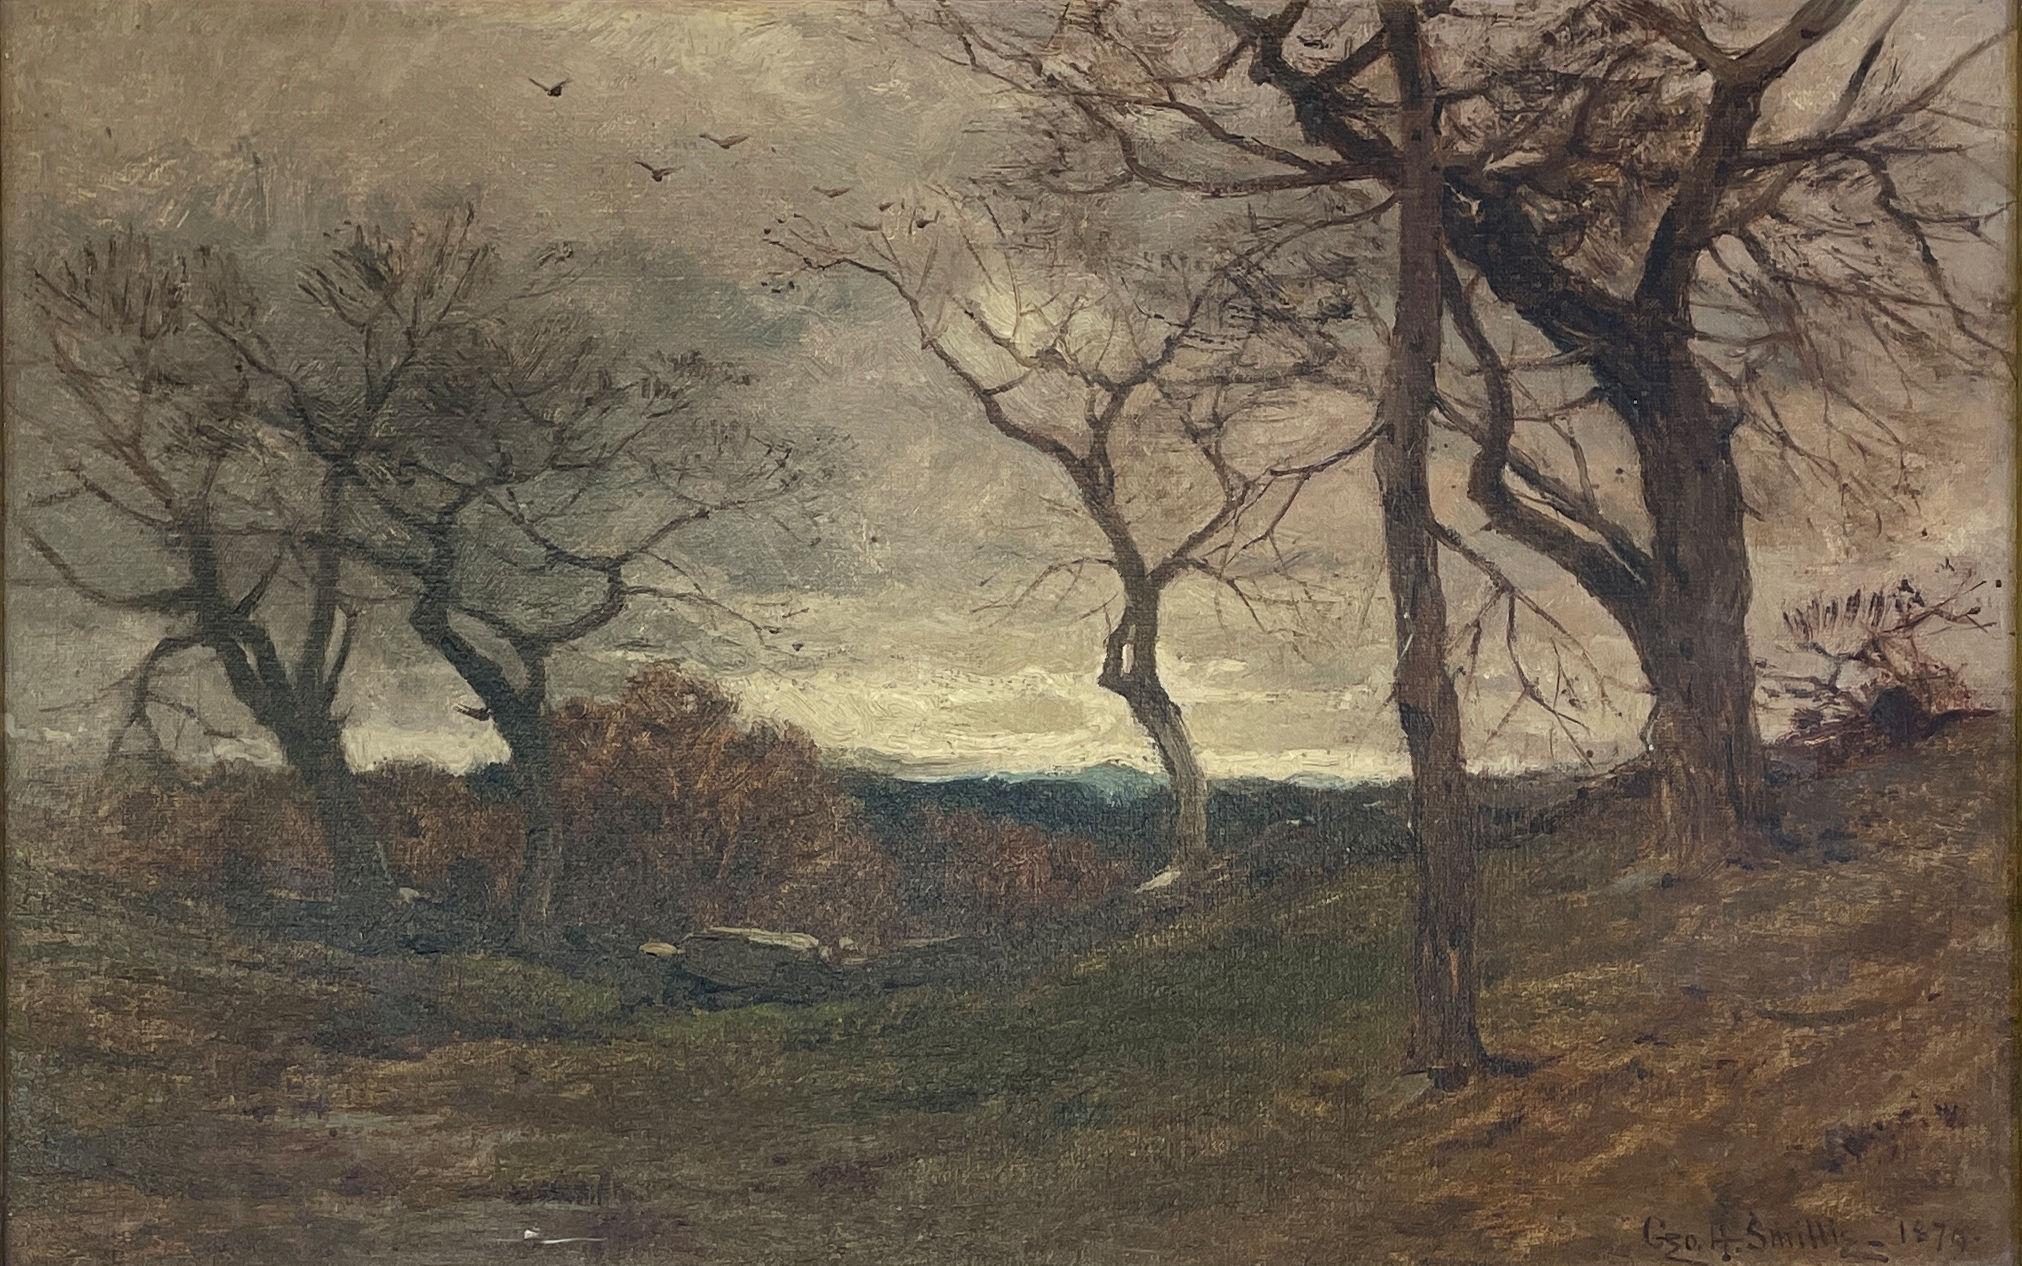 Landscape Painting George Henry Smillie - « Stone Wall, Autumn », George Smillie, Vue de paysage de l'automne tonaliste